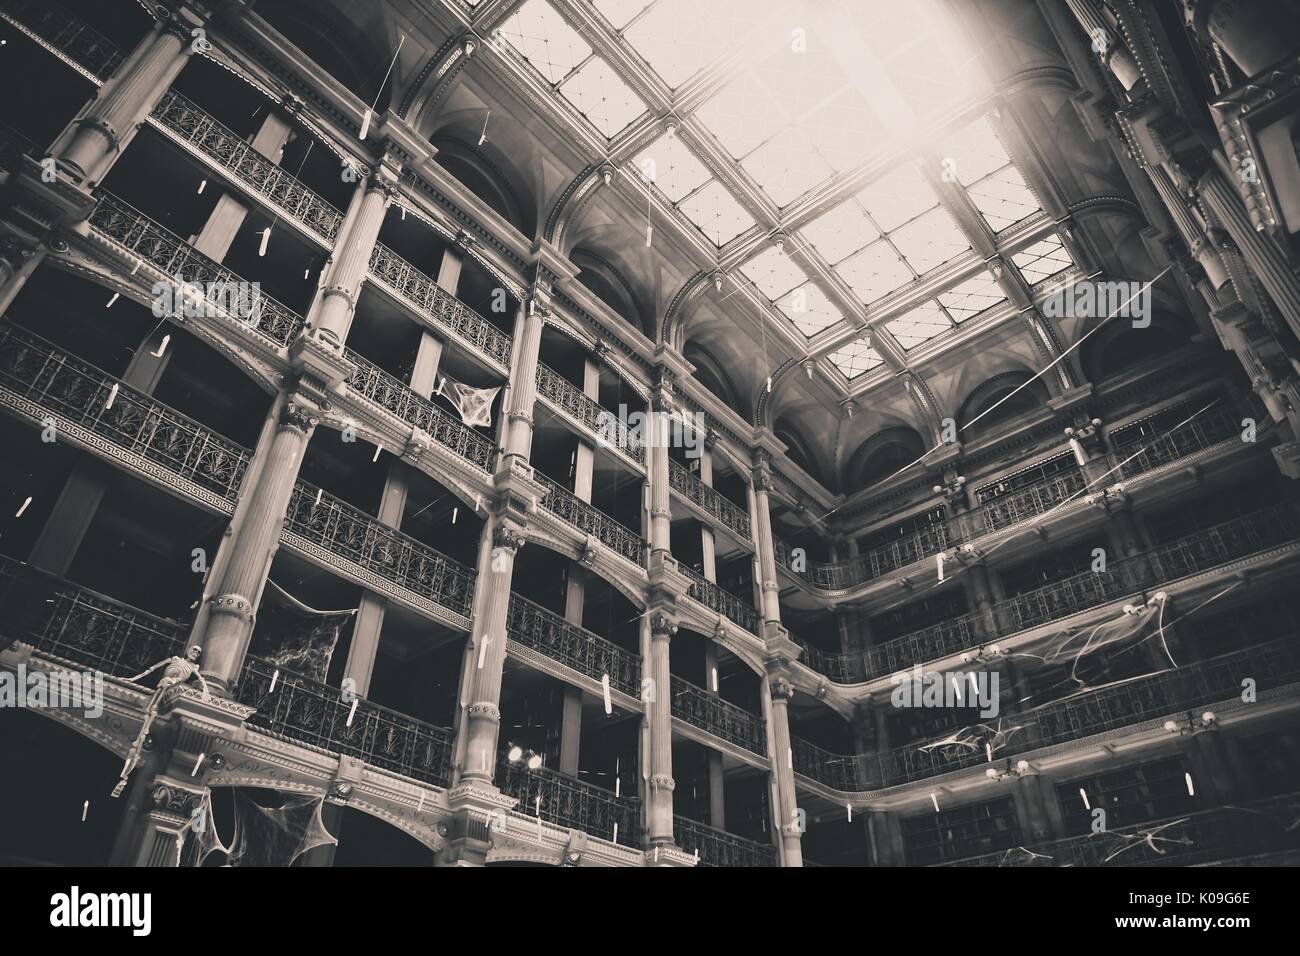 Le noir et blanc low angle view à la hausse à plusieurs étages et le plafond de la bibliothèque George Peabody de l'Université Johns Hopkins, 2015. Avec la permission de Eric Chen. Banque D'Images